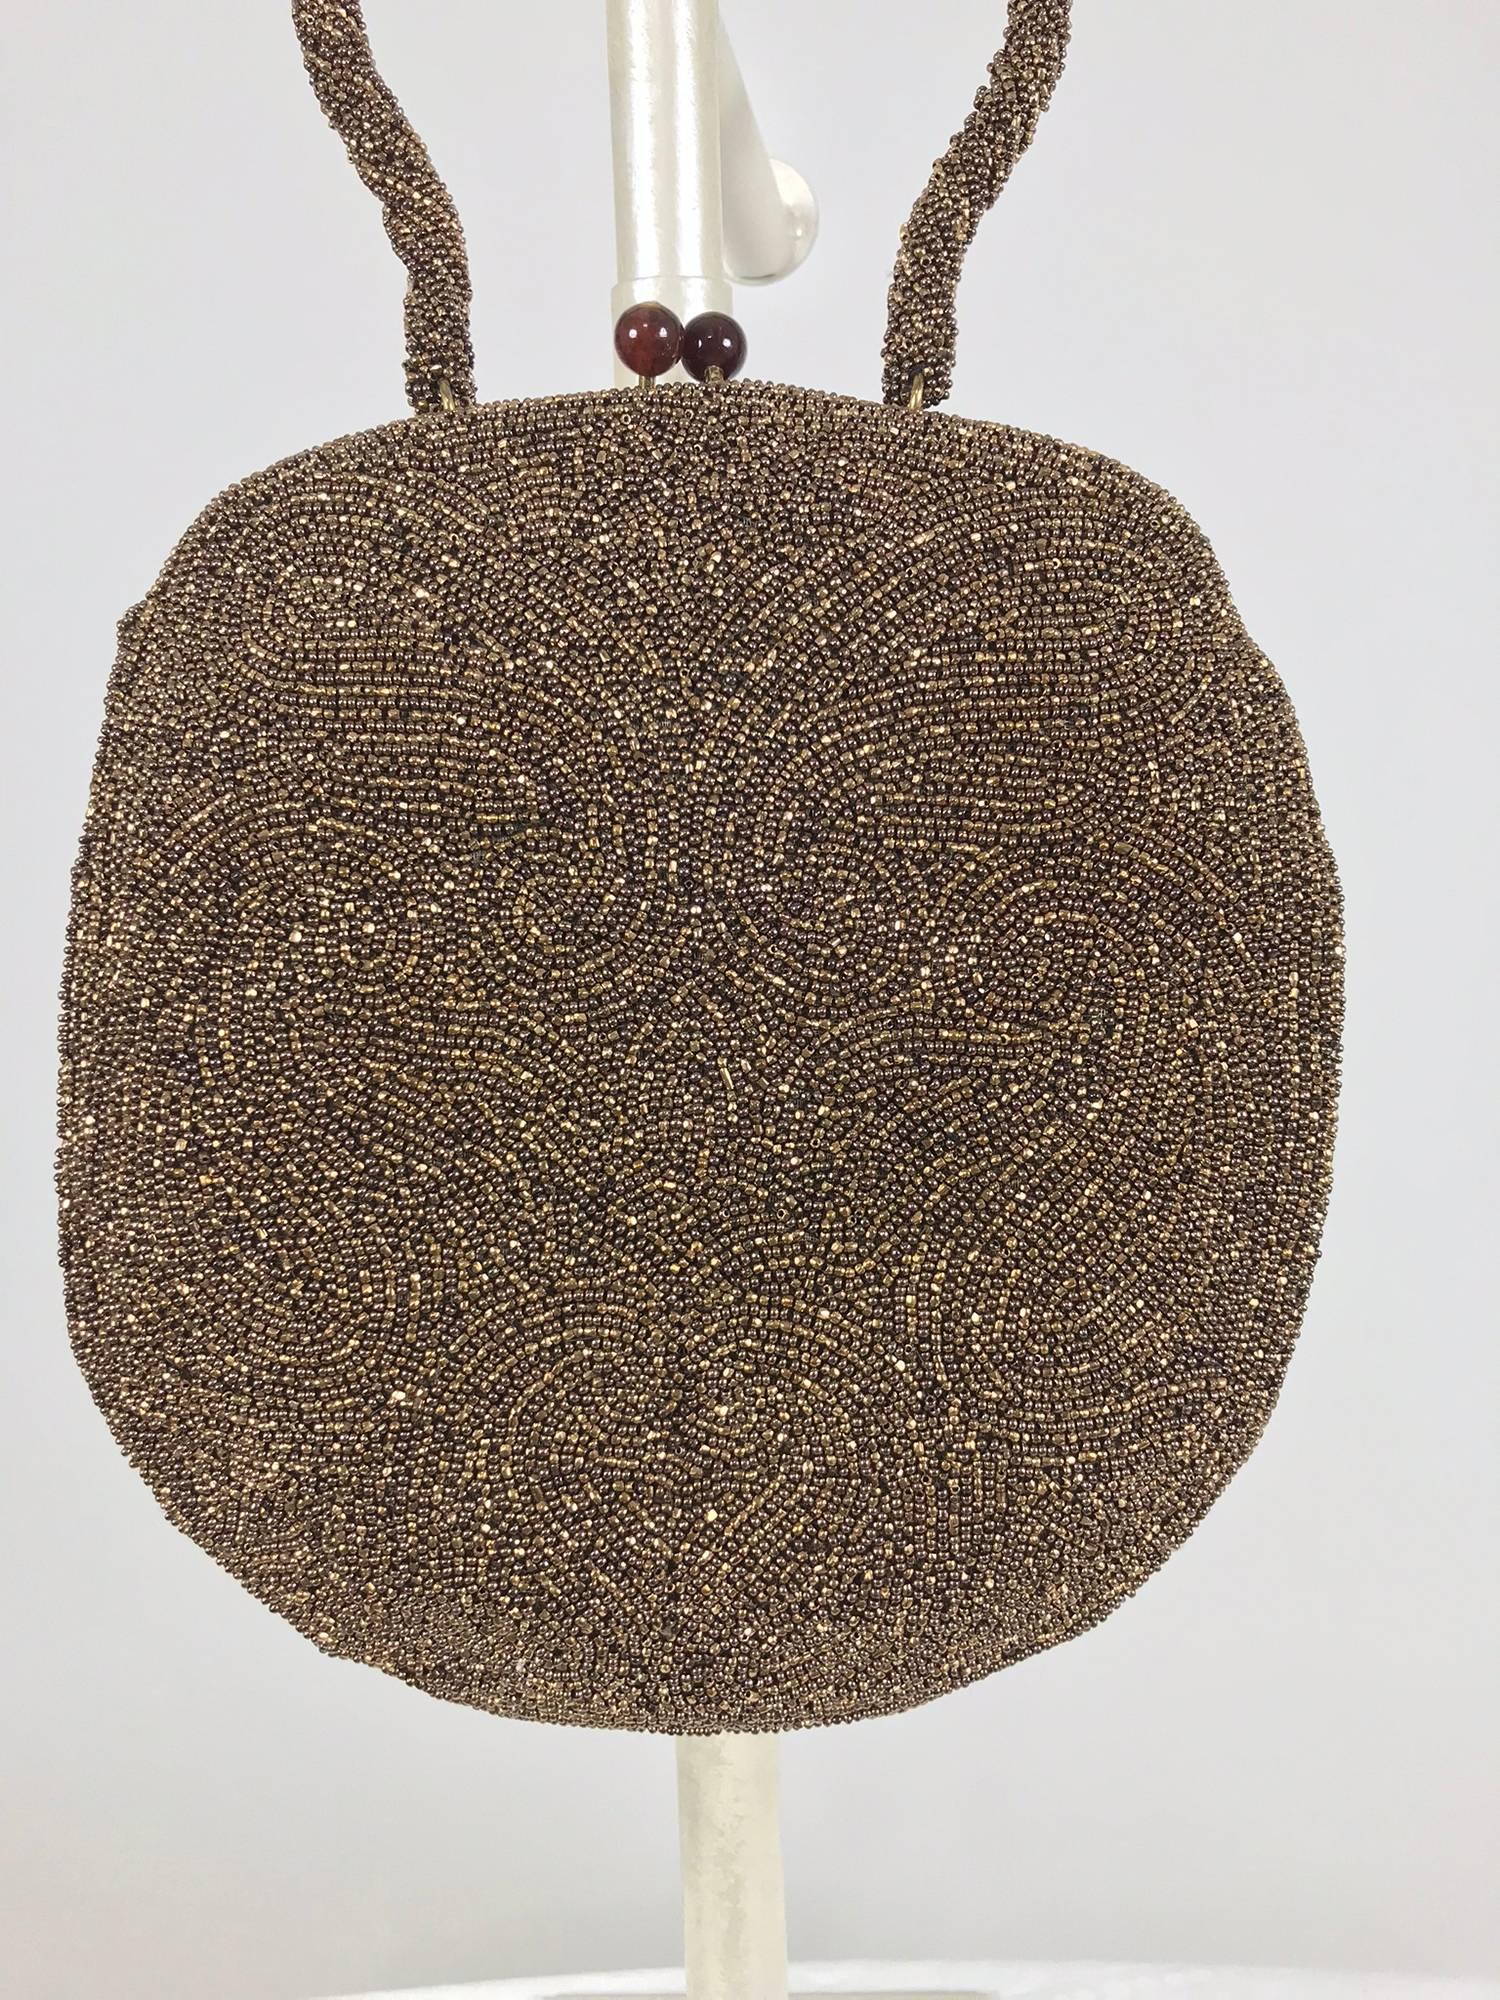 Walborg einzigartige Kupfer Perlen Rahmen Abendtasche aus den 1940er Jahren, neu mit dem Original-Tag. Diese schöne Tasche hat eine ovale Form, die einzigartig ist. Der Griff ist mit Perlen besetzt und geformt. Die Tasche wird mit einem